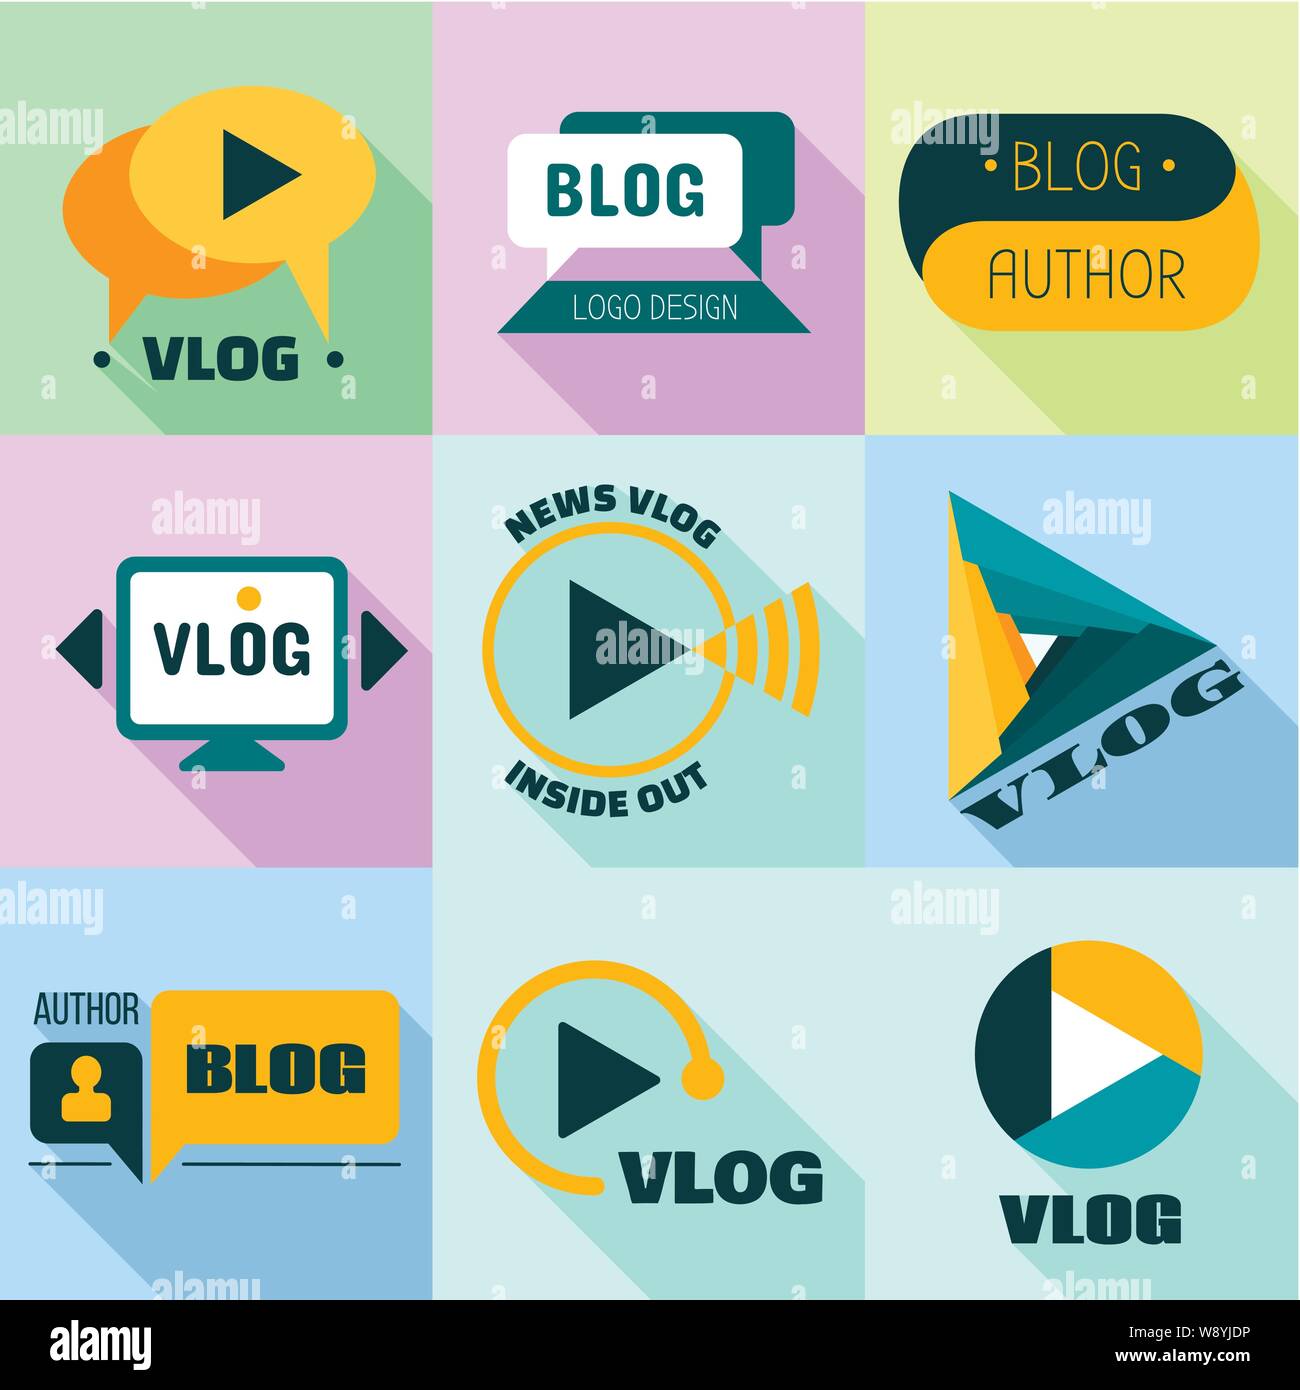 Hãy cùng khám phá logo vlog hiện đại với thiết kế độc đáo và sắc nét từ những họa tiết tinh tế! Logo vlog này sẽ giúp bạn thu hút sự chú ý và nổi bật trên thị trường nhanh chóng. 